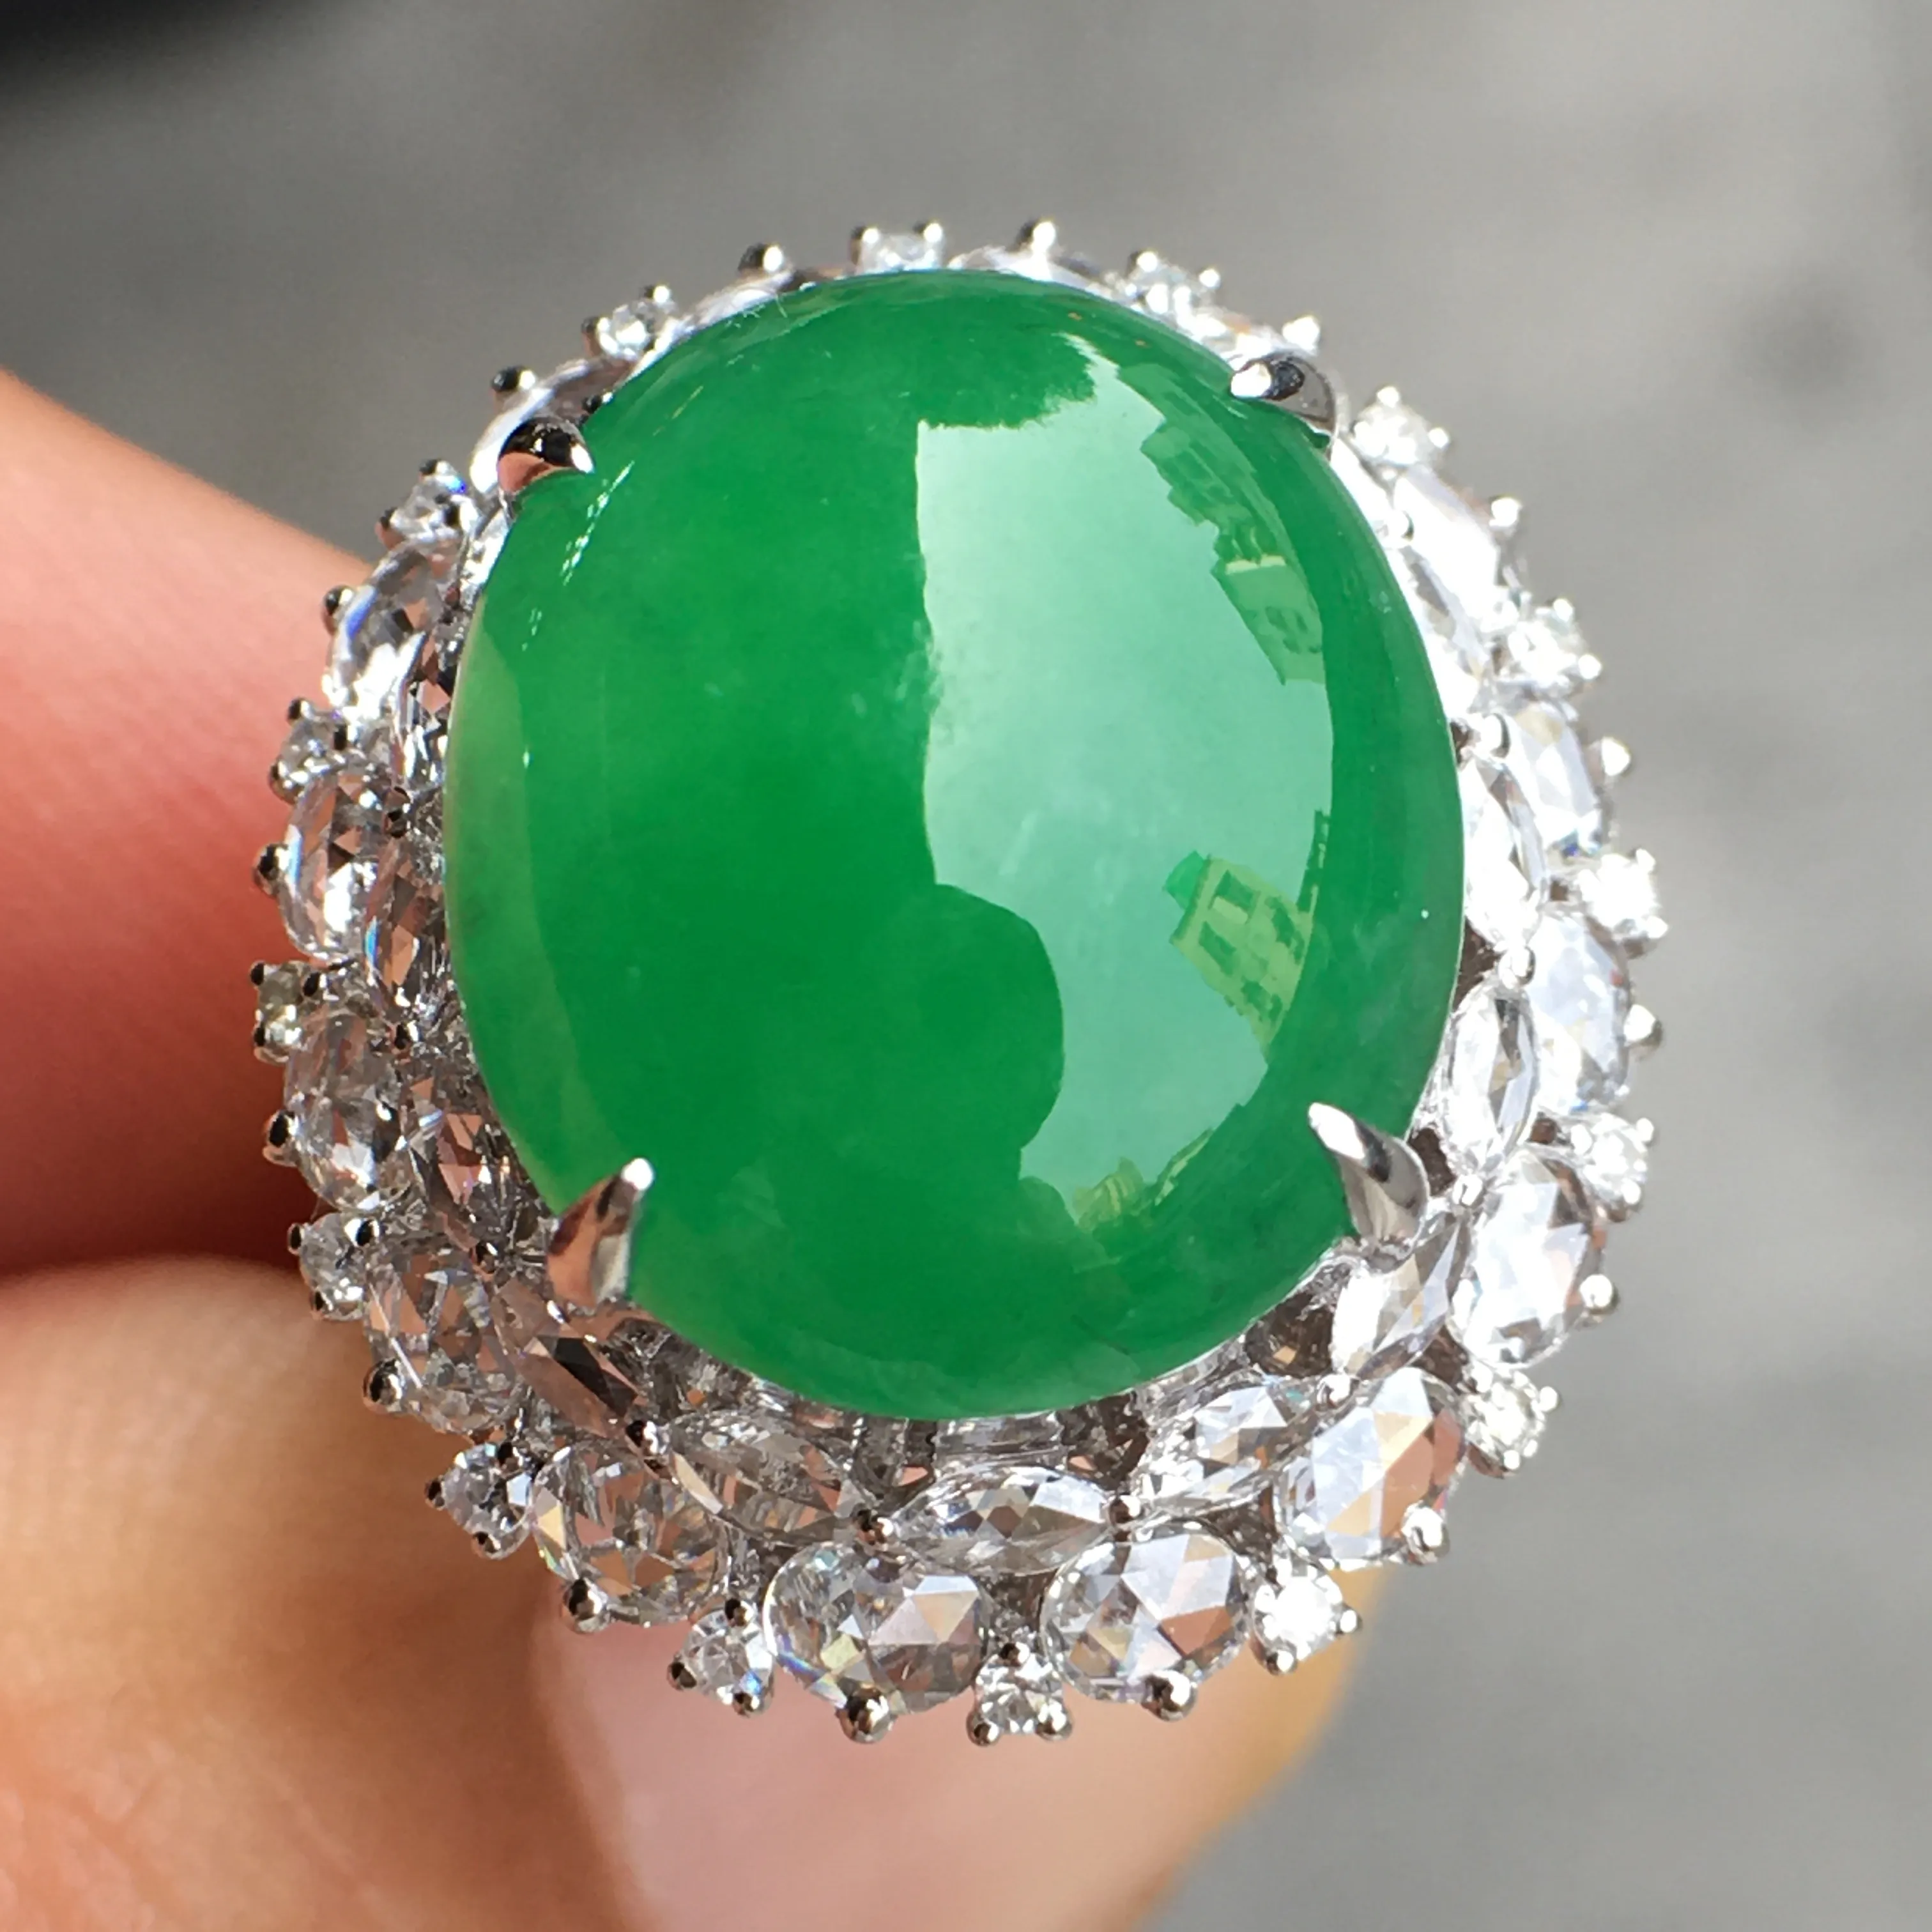 超好看的一枚绿蛋面戒指，种水细腻莹润，
光感十足，器型很饱满，18k伴钻精镶，优
雅迷人～18k金豪